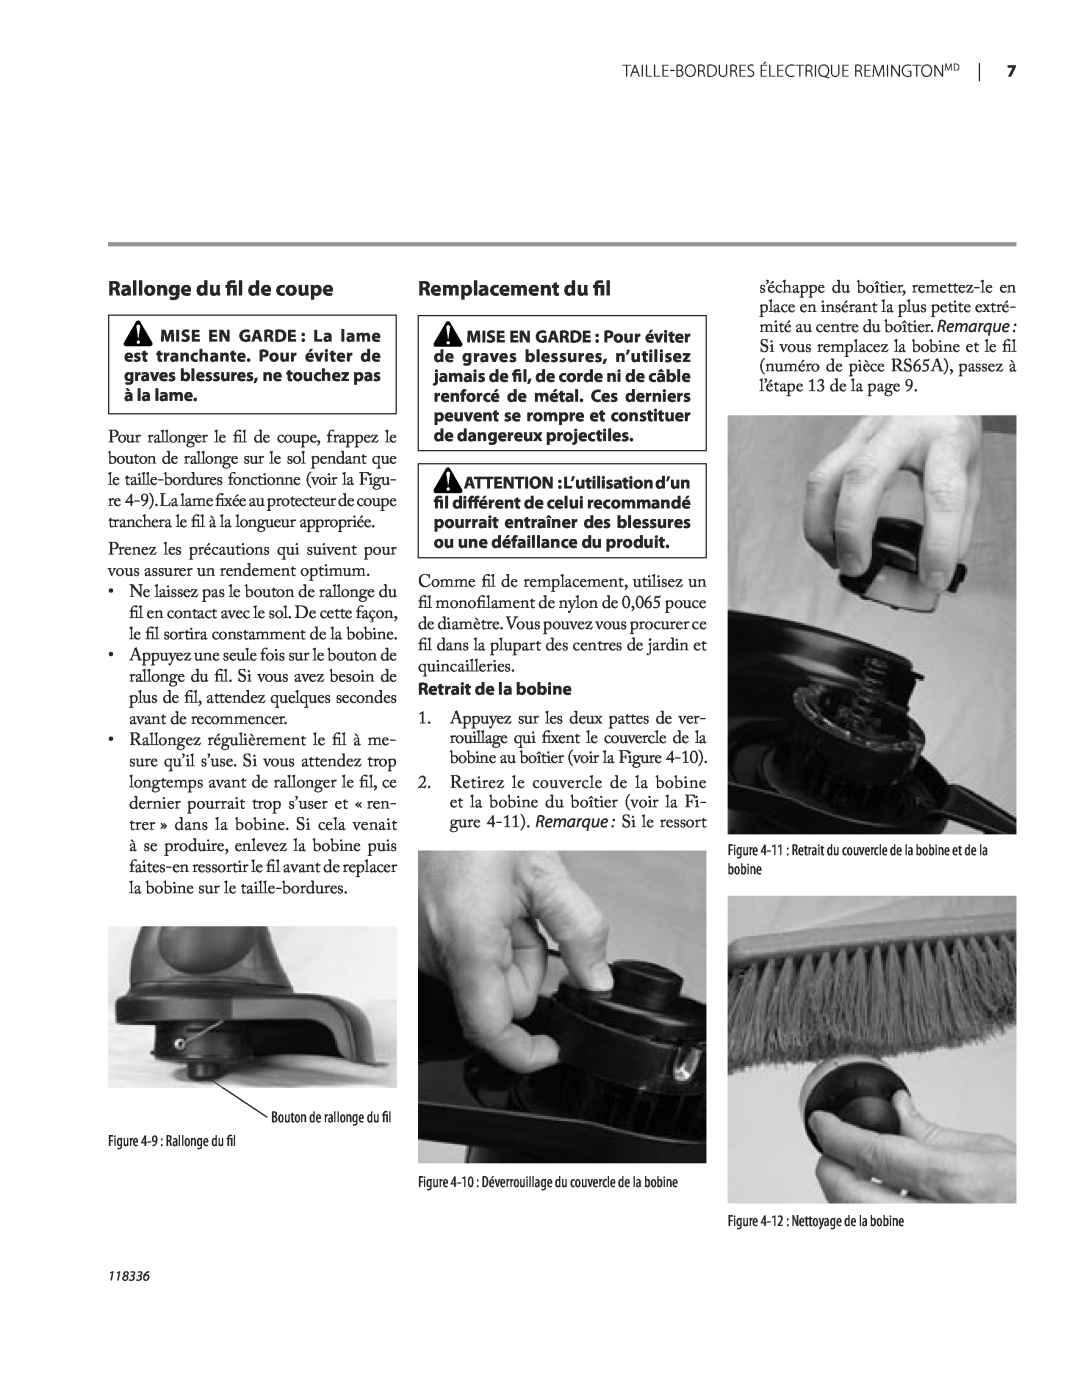 Remington ST3010A owner manual Rallonge du ﬁl de coupe, Remplacement du ﬁl, Retrait de la bobine, 12 Nettoyage de la bobine 